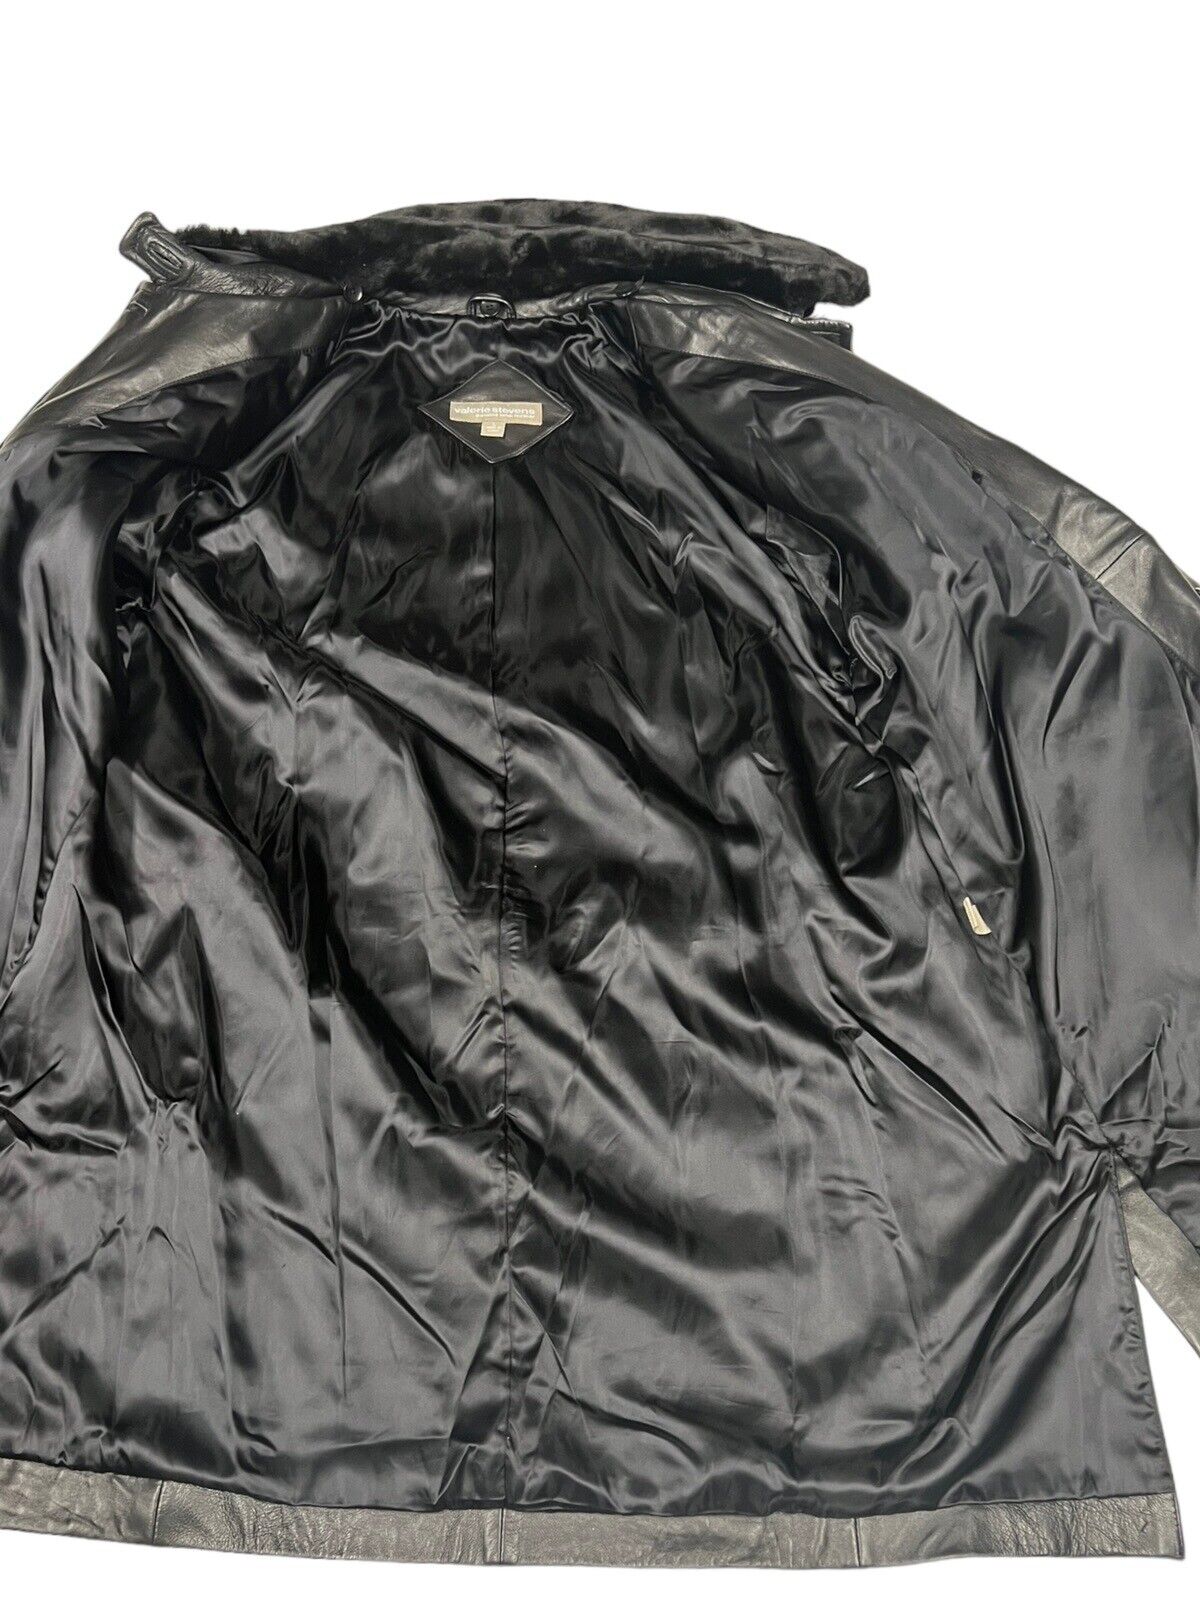 Valerie Stevens Black Jacket Sz Large Removable F… - image 16